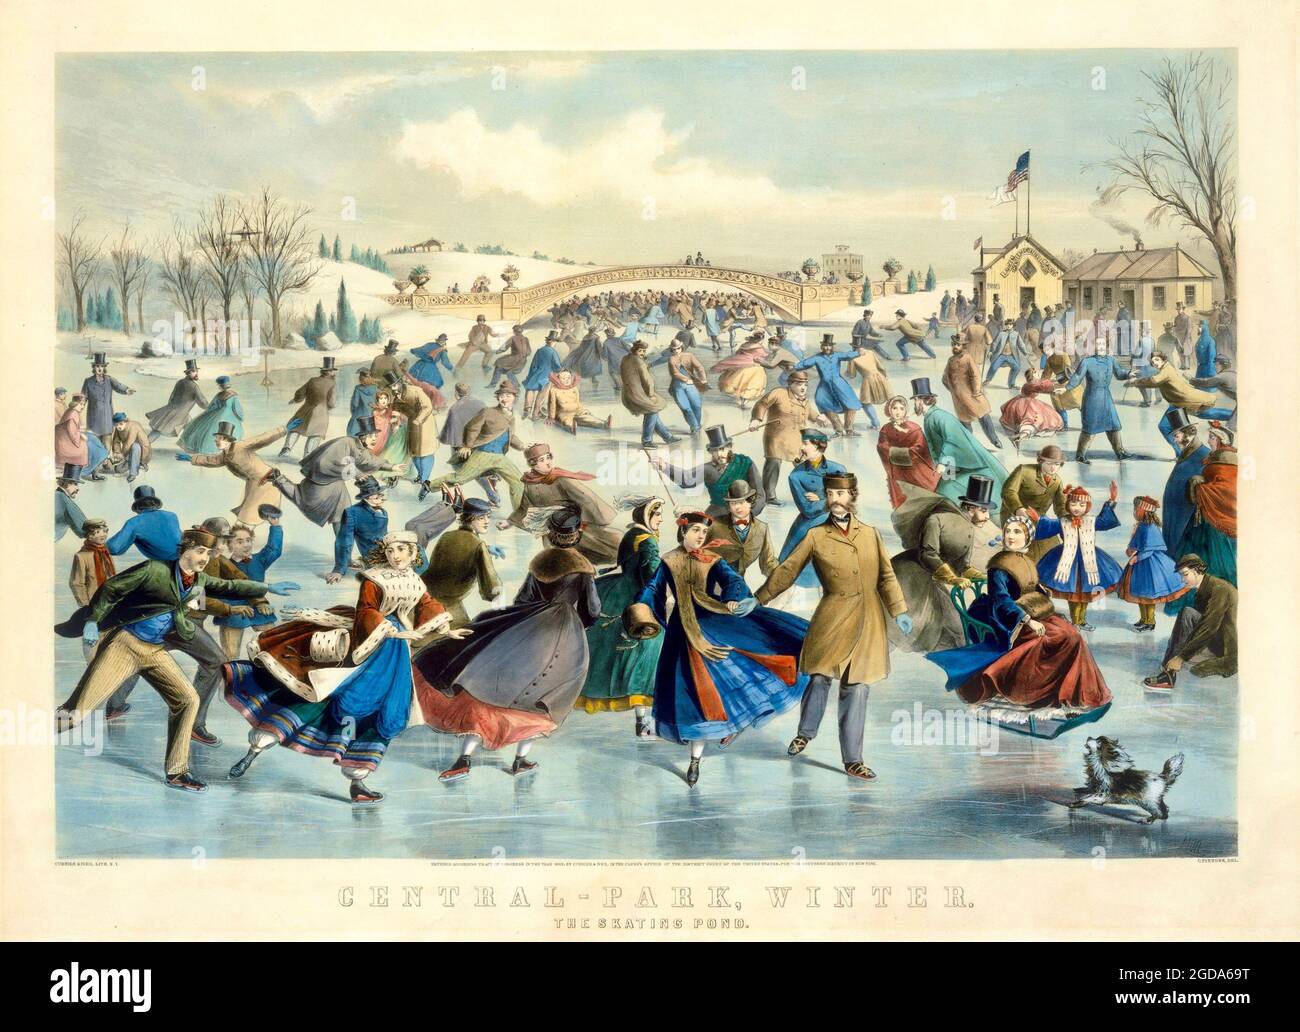 Central Park en hiver - l'étang de patinage - Charles Parsons - 1862 Banque D'Images